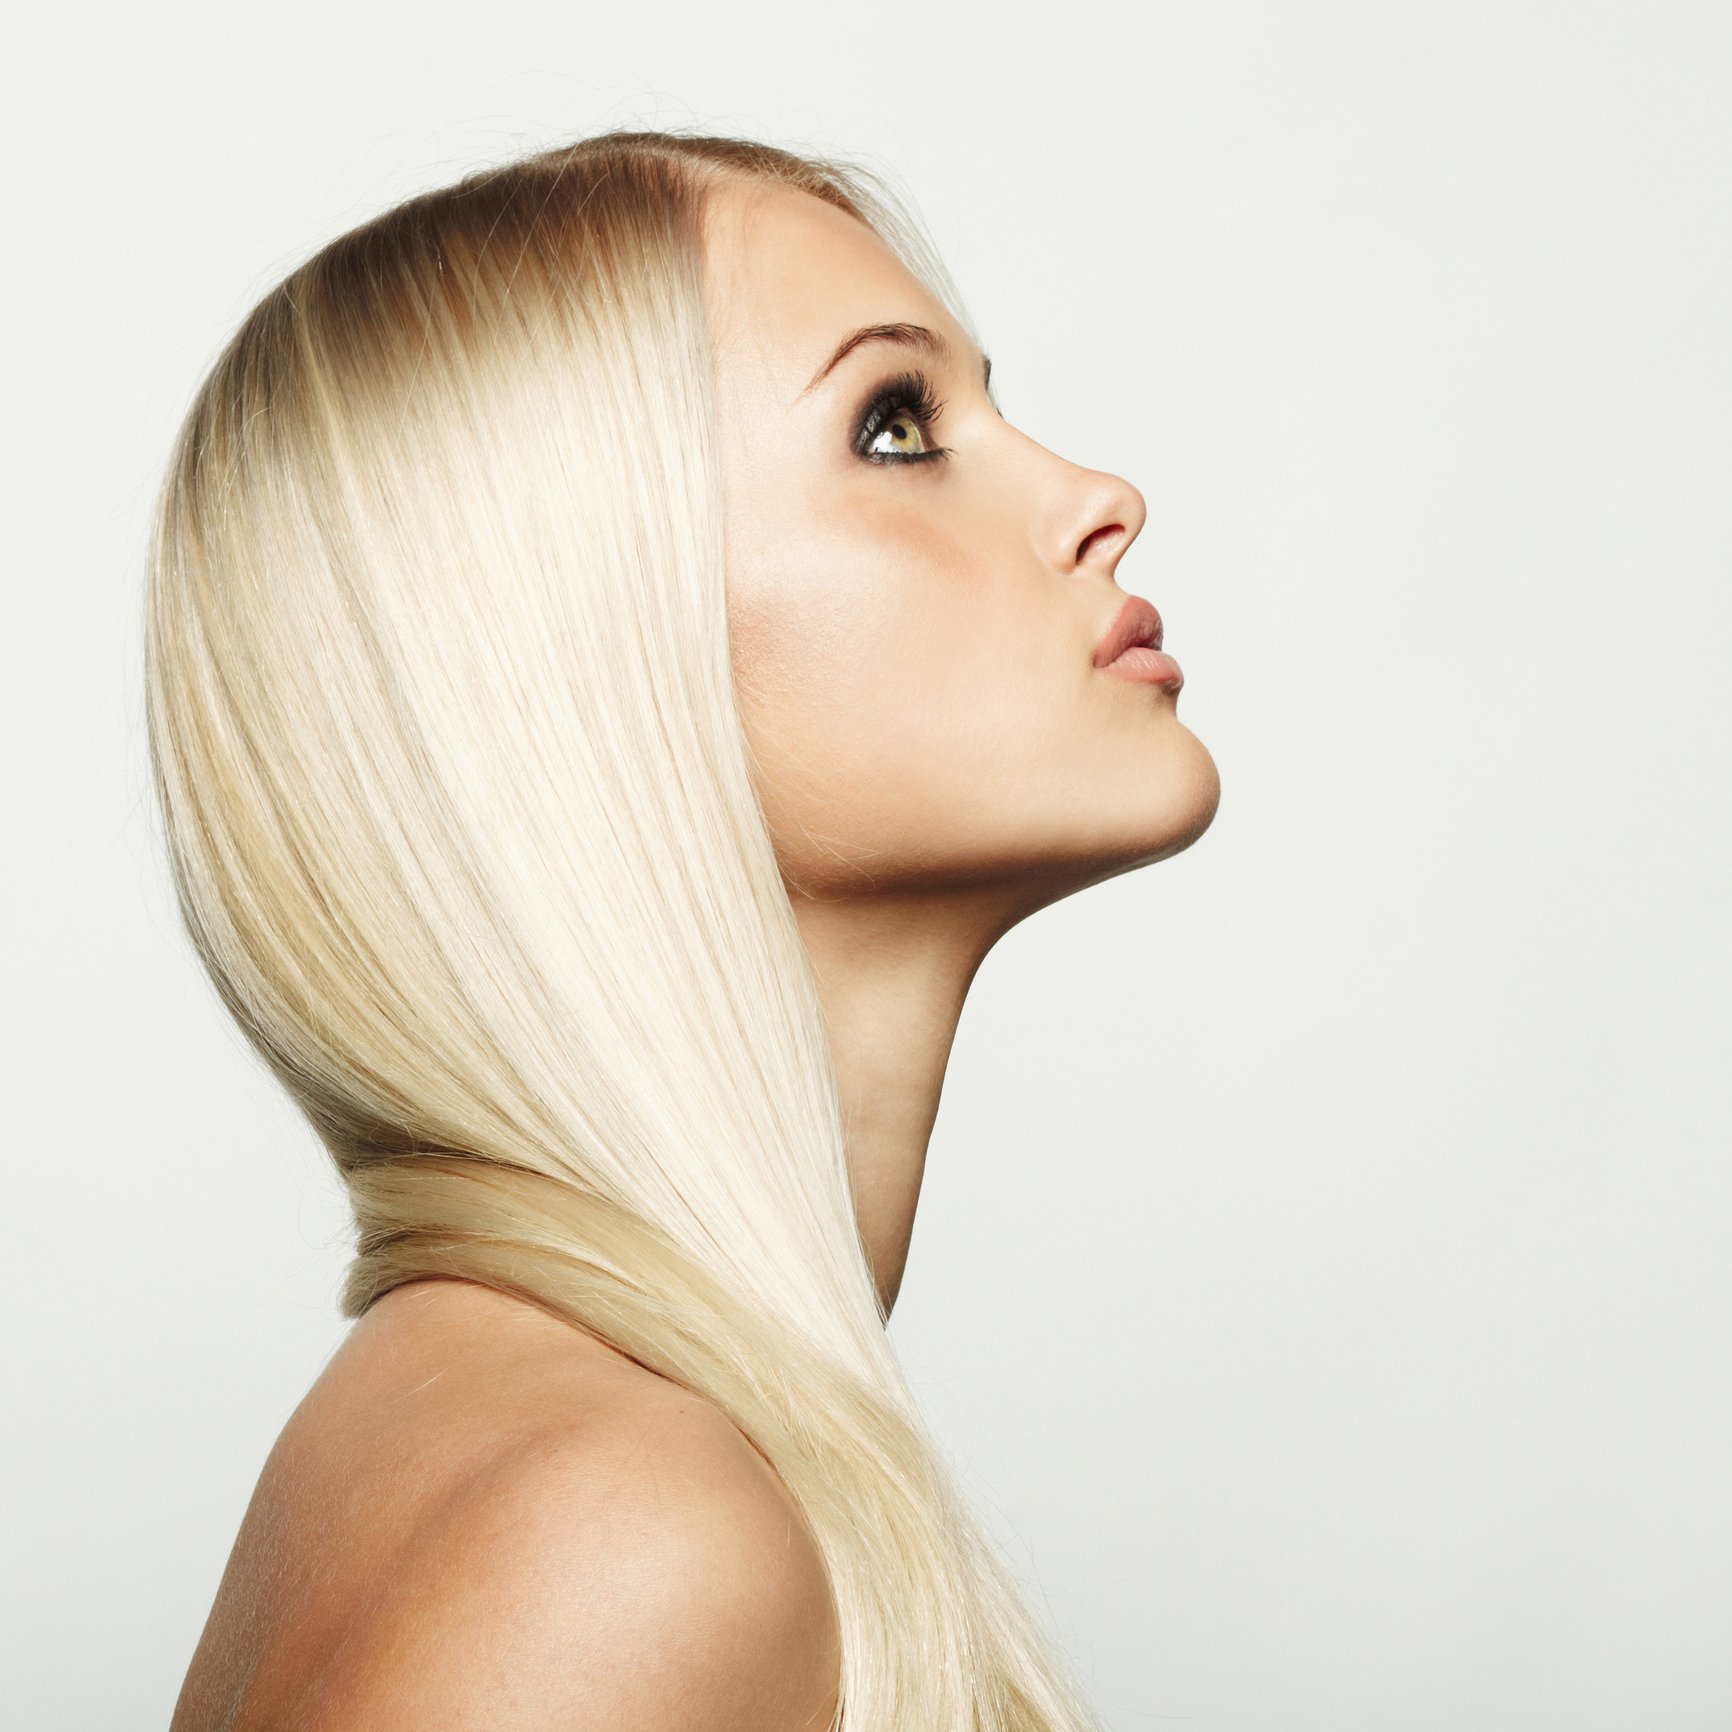 femme aux cheveux blonds. | Photo : Getty Images